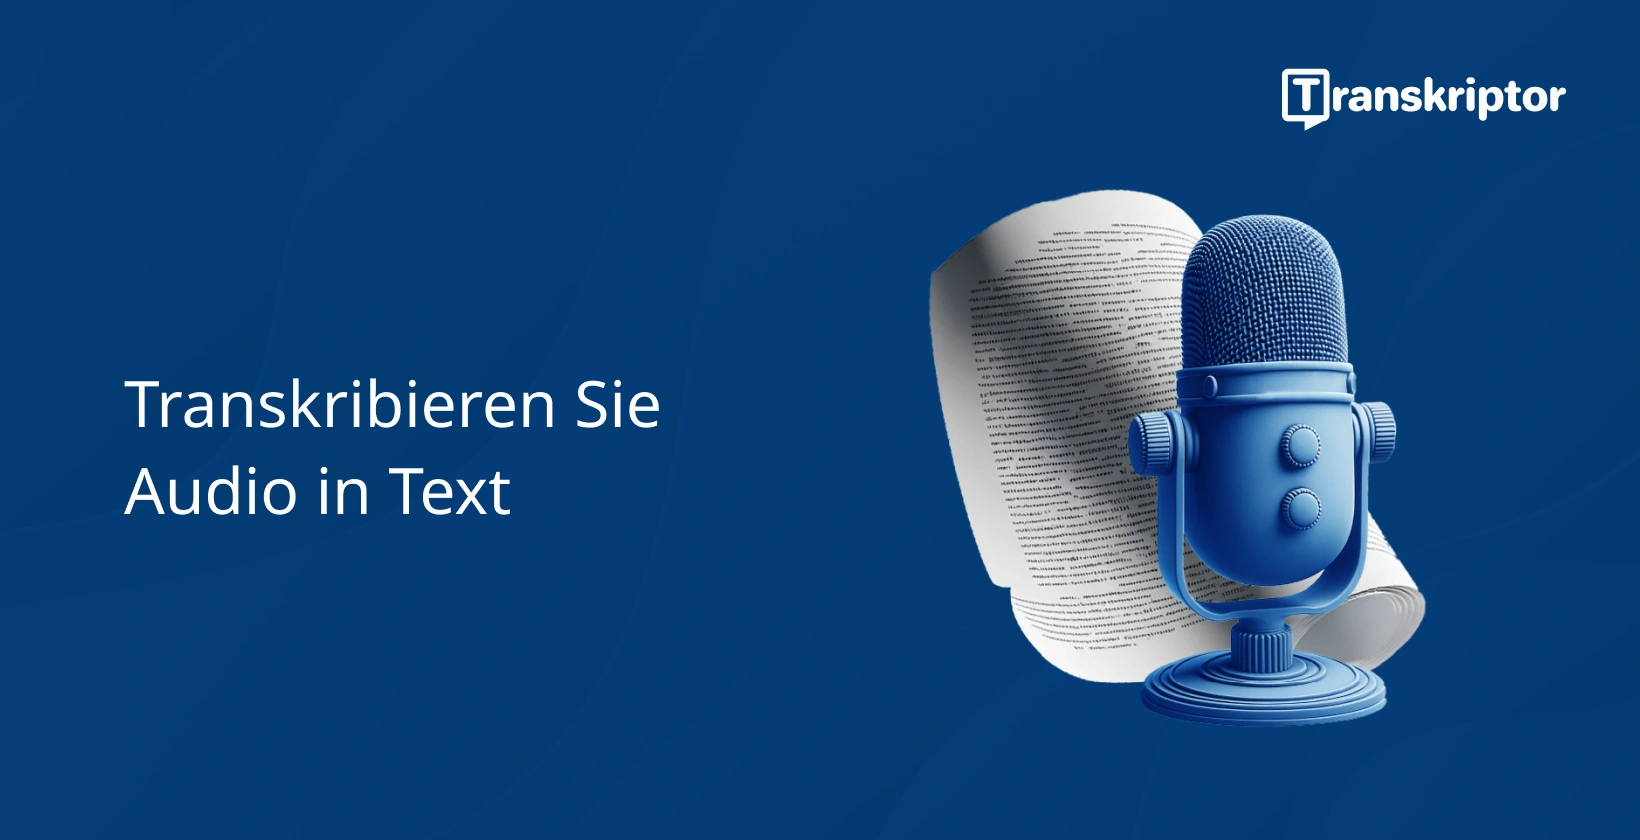 Transkribieren Sie Audio in Text, der durch ein blaues Mikrofon und ein Textdokument dargestellt wird.